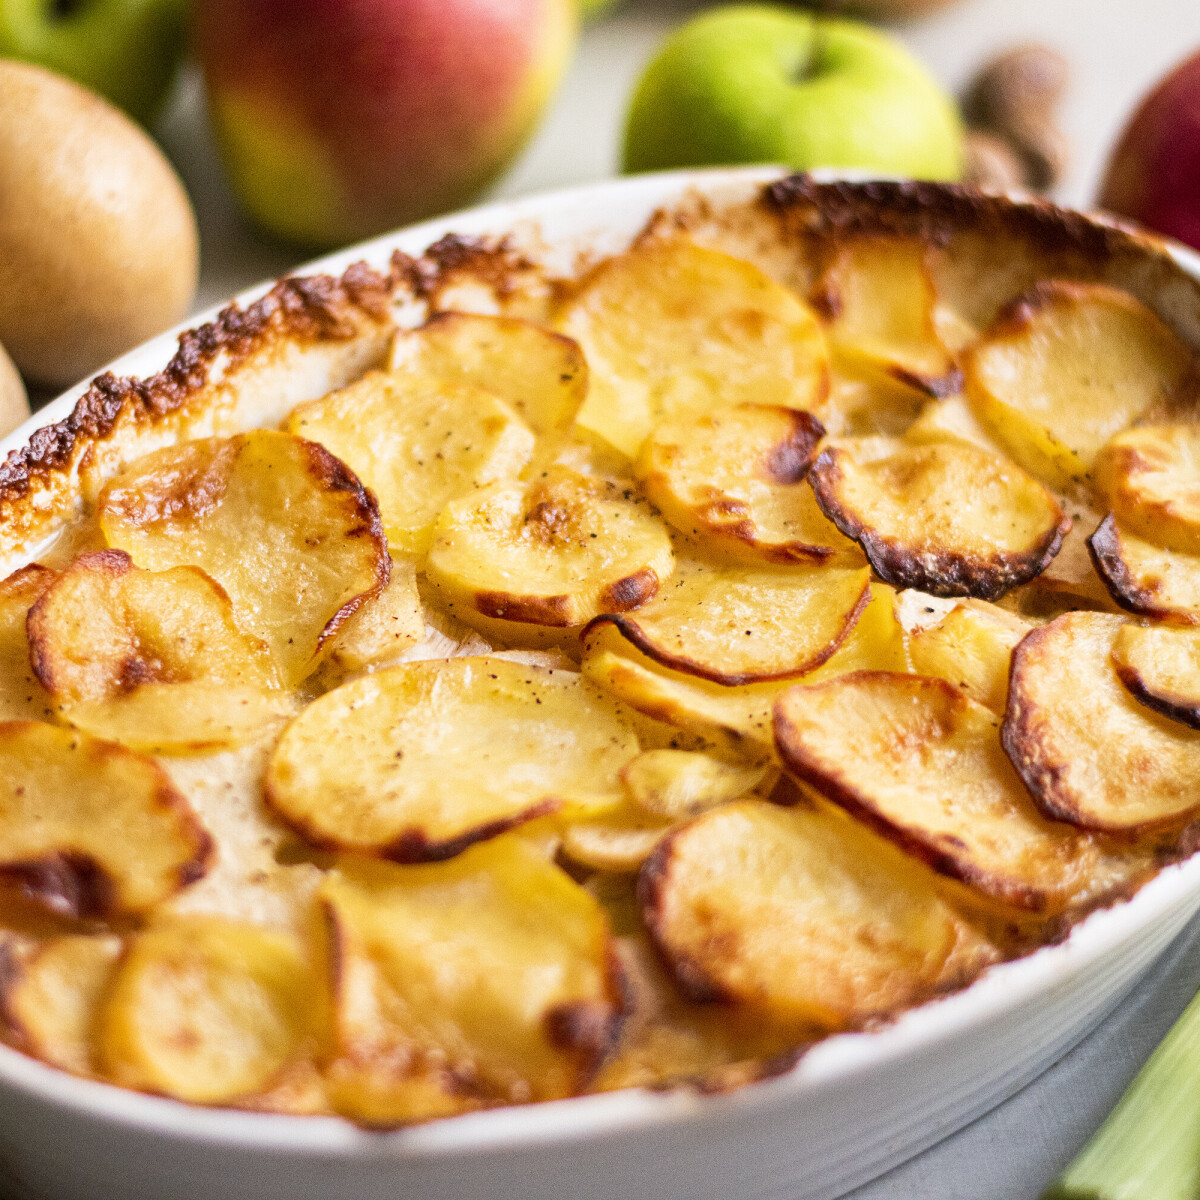 3 izgi almás recept, mert ősszel még a rakott krumpliba is almát teszünk